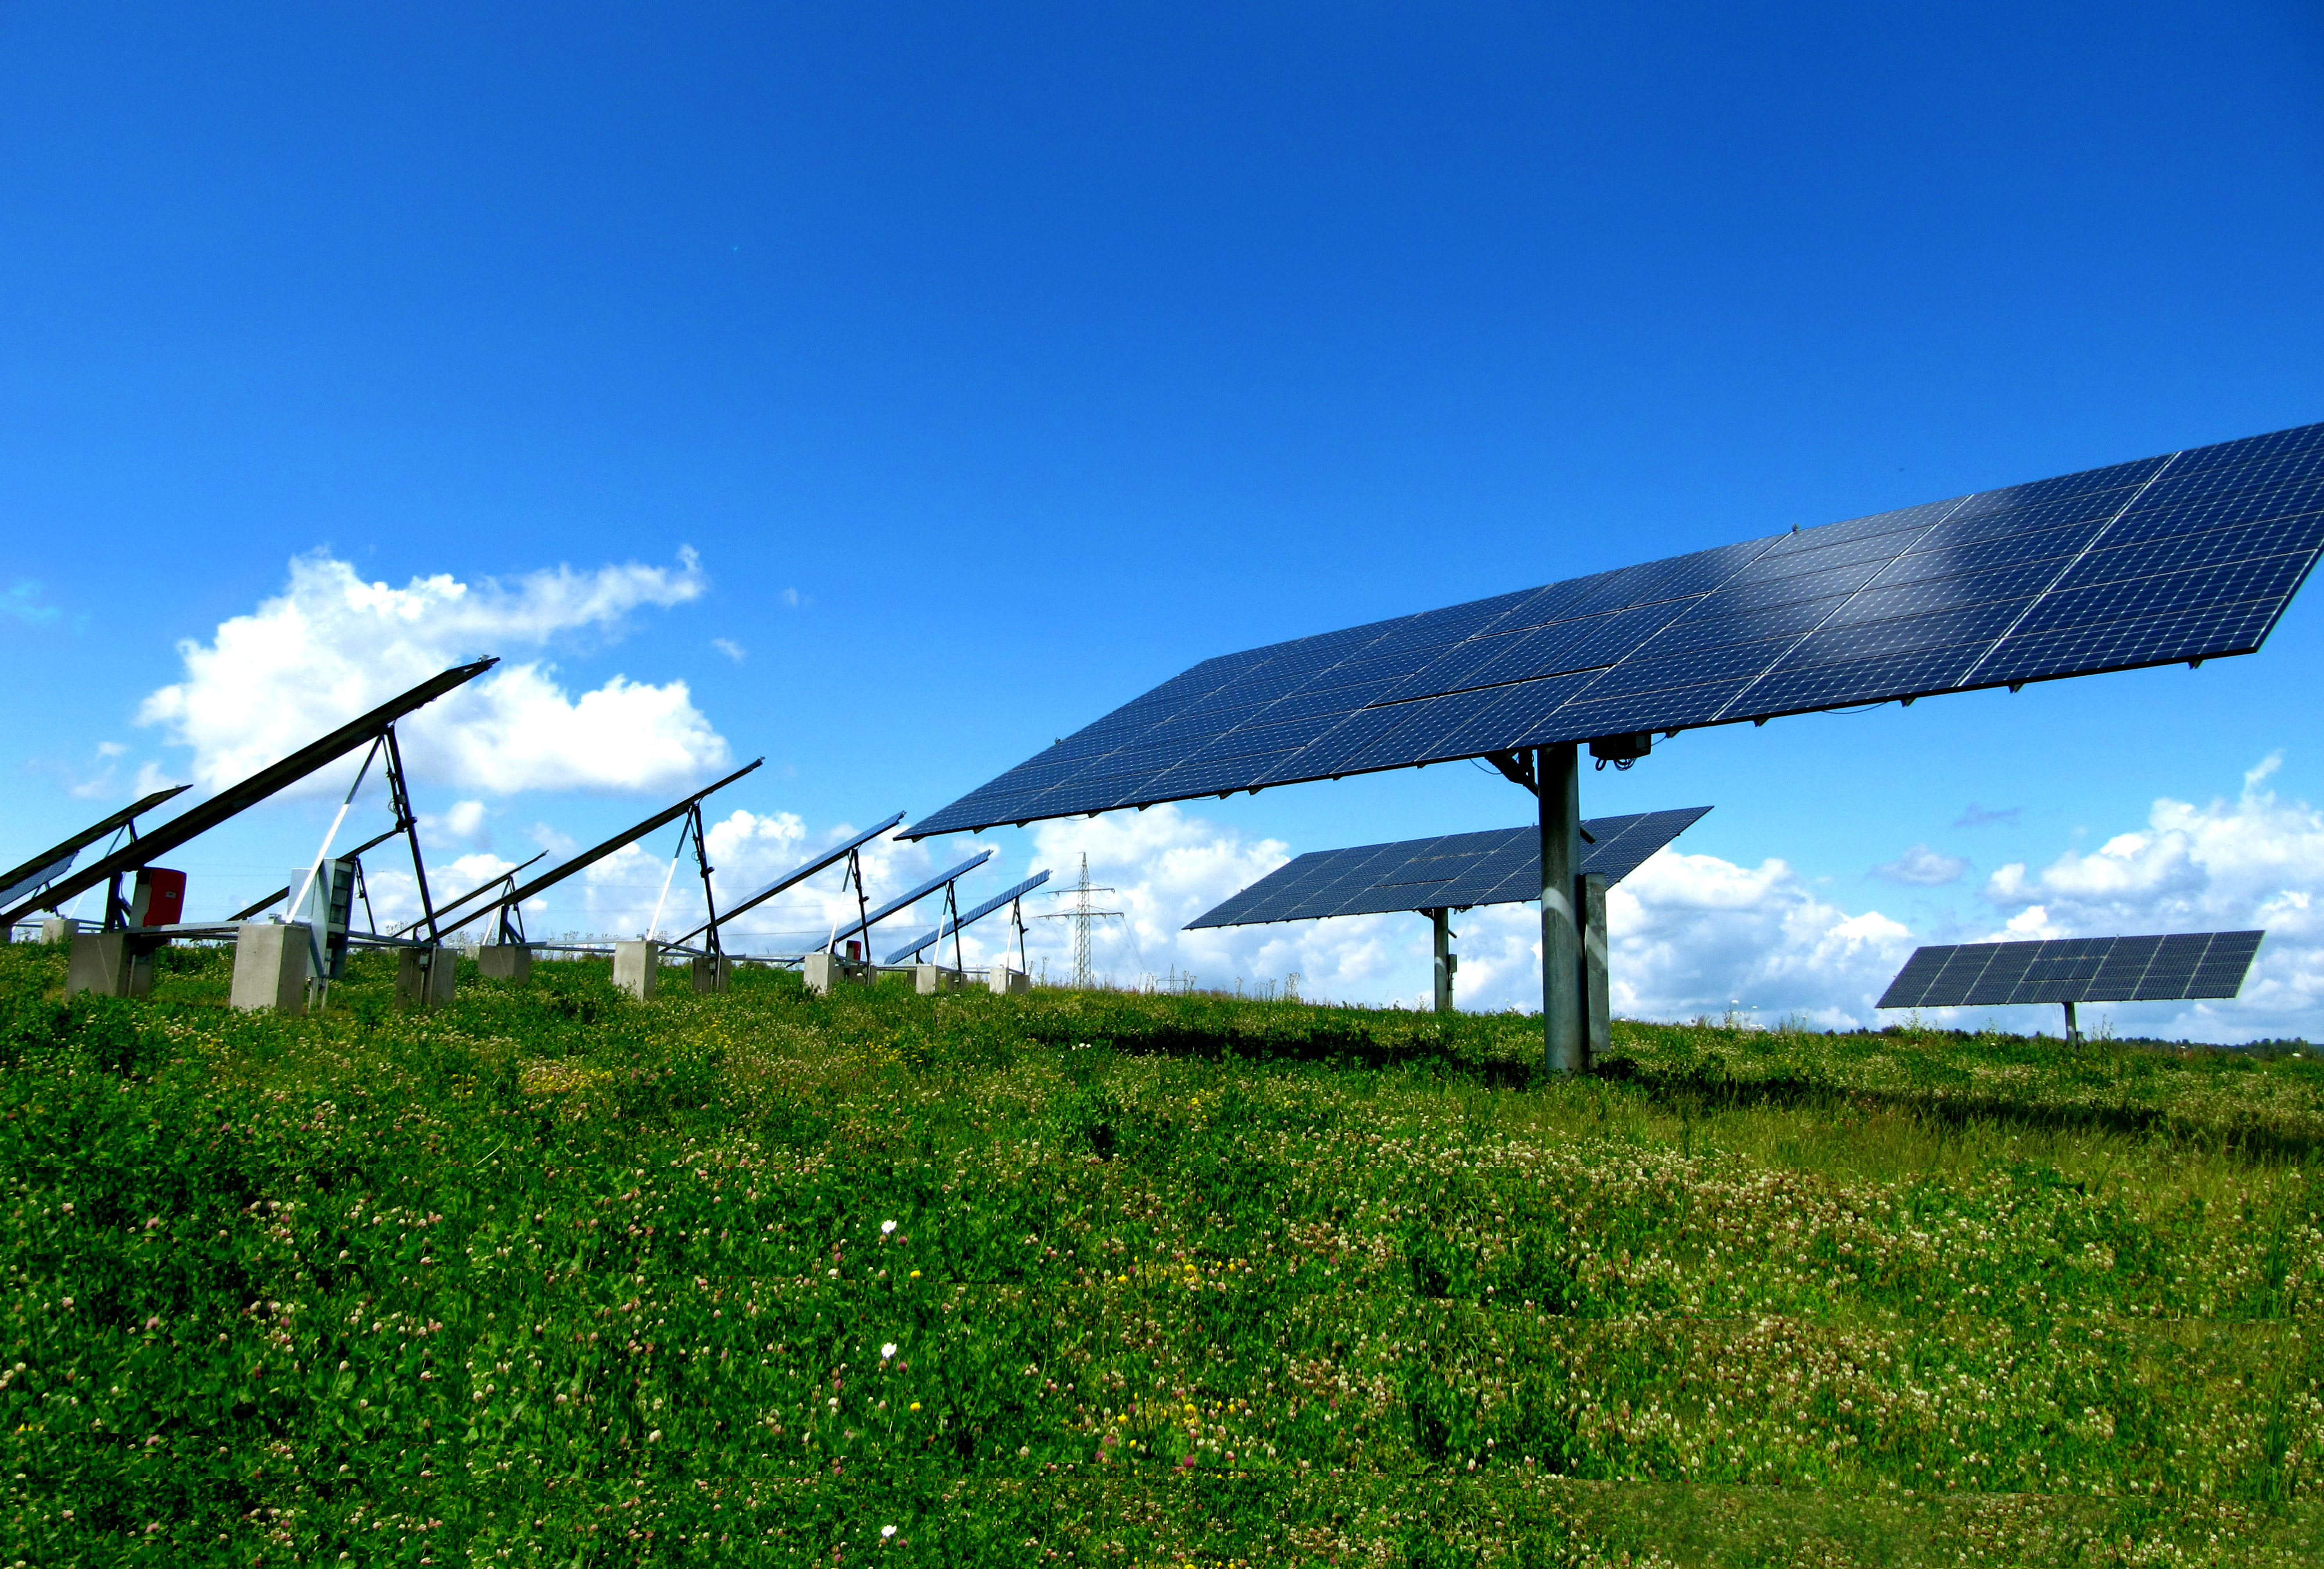 LandGate Releases Comprehensive Data on Solar Development in Massachusetts